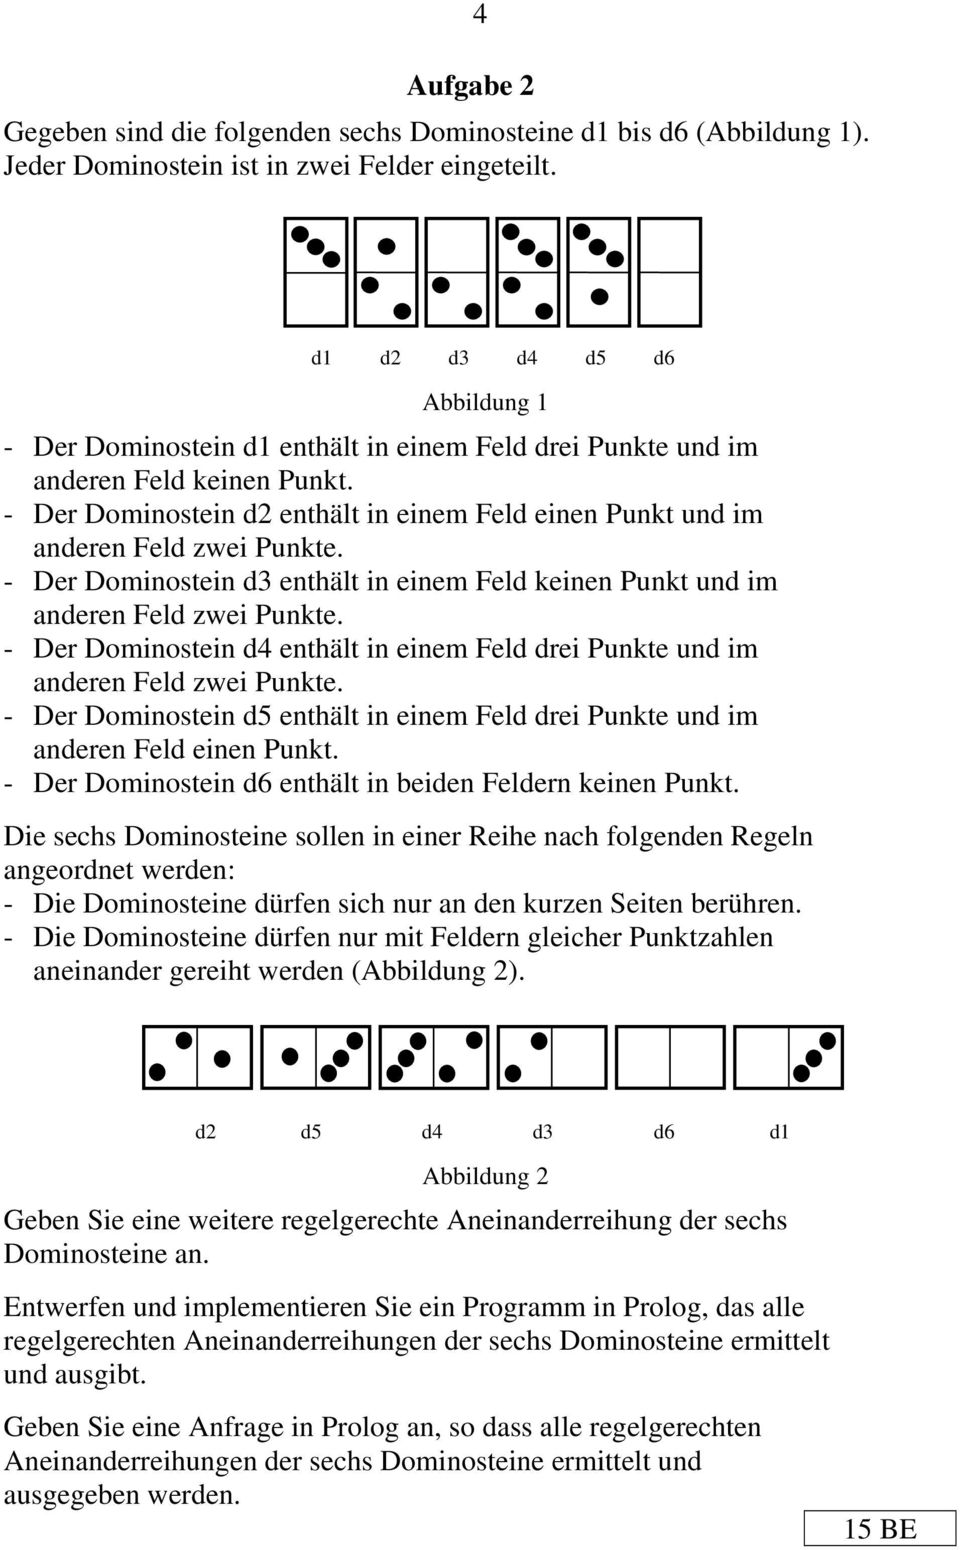 - Der Dominostein d2 enthält in einem Feld einen Punkt und im anderen Feld zwei Punkte. - Der Dominostein d3 enthält in einem Feld keinen Punkt und im anderen Feld zwei Punkte.